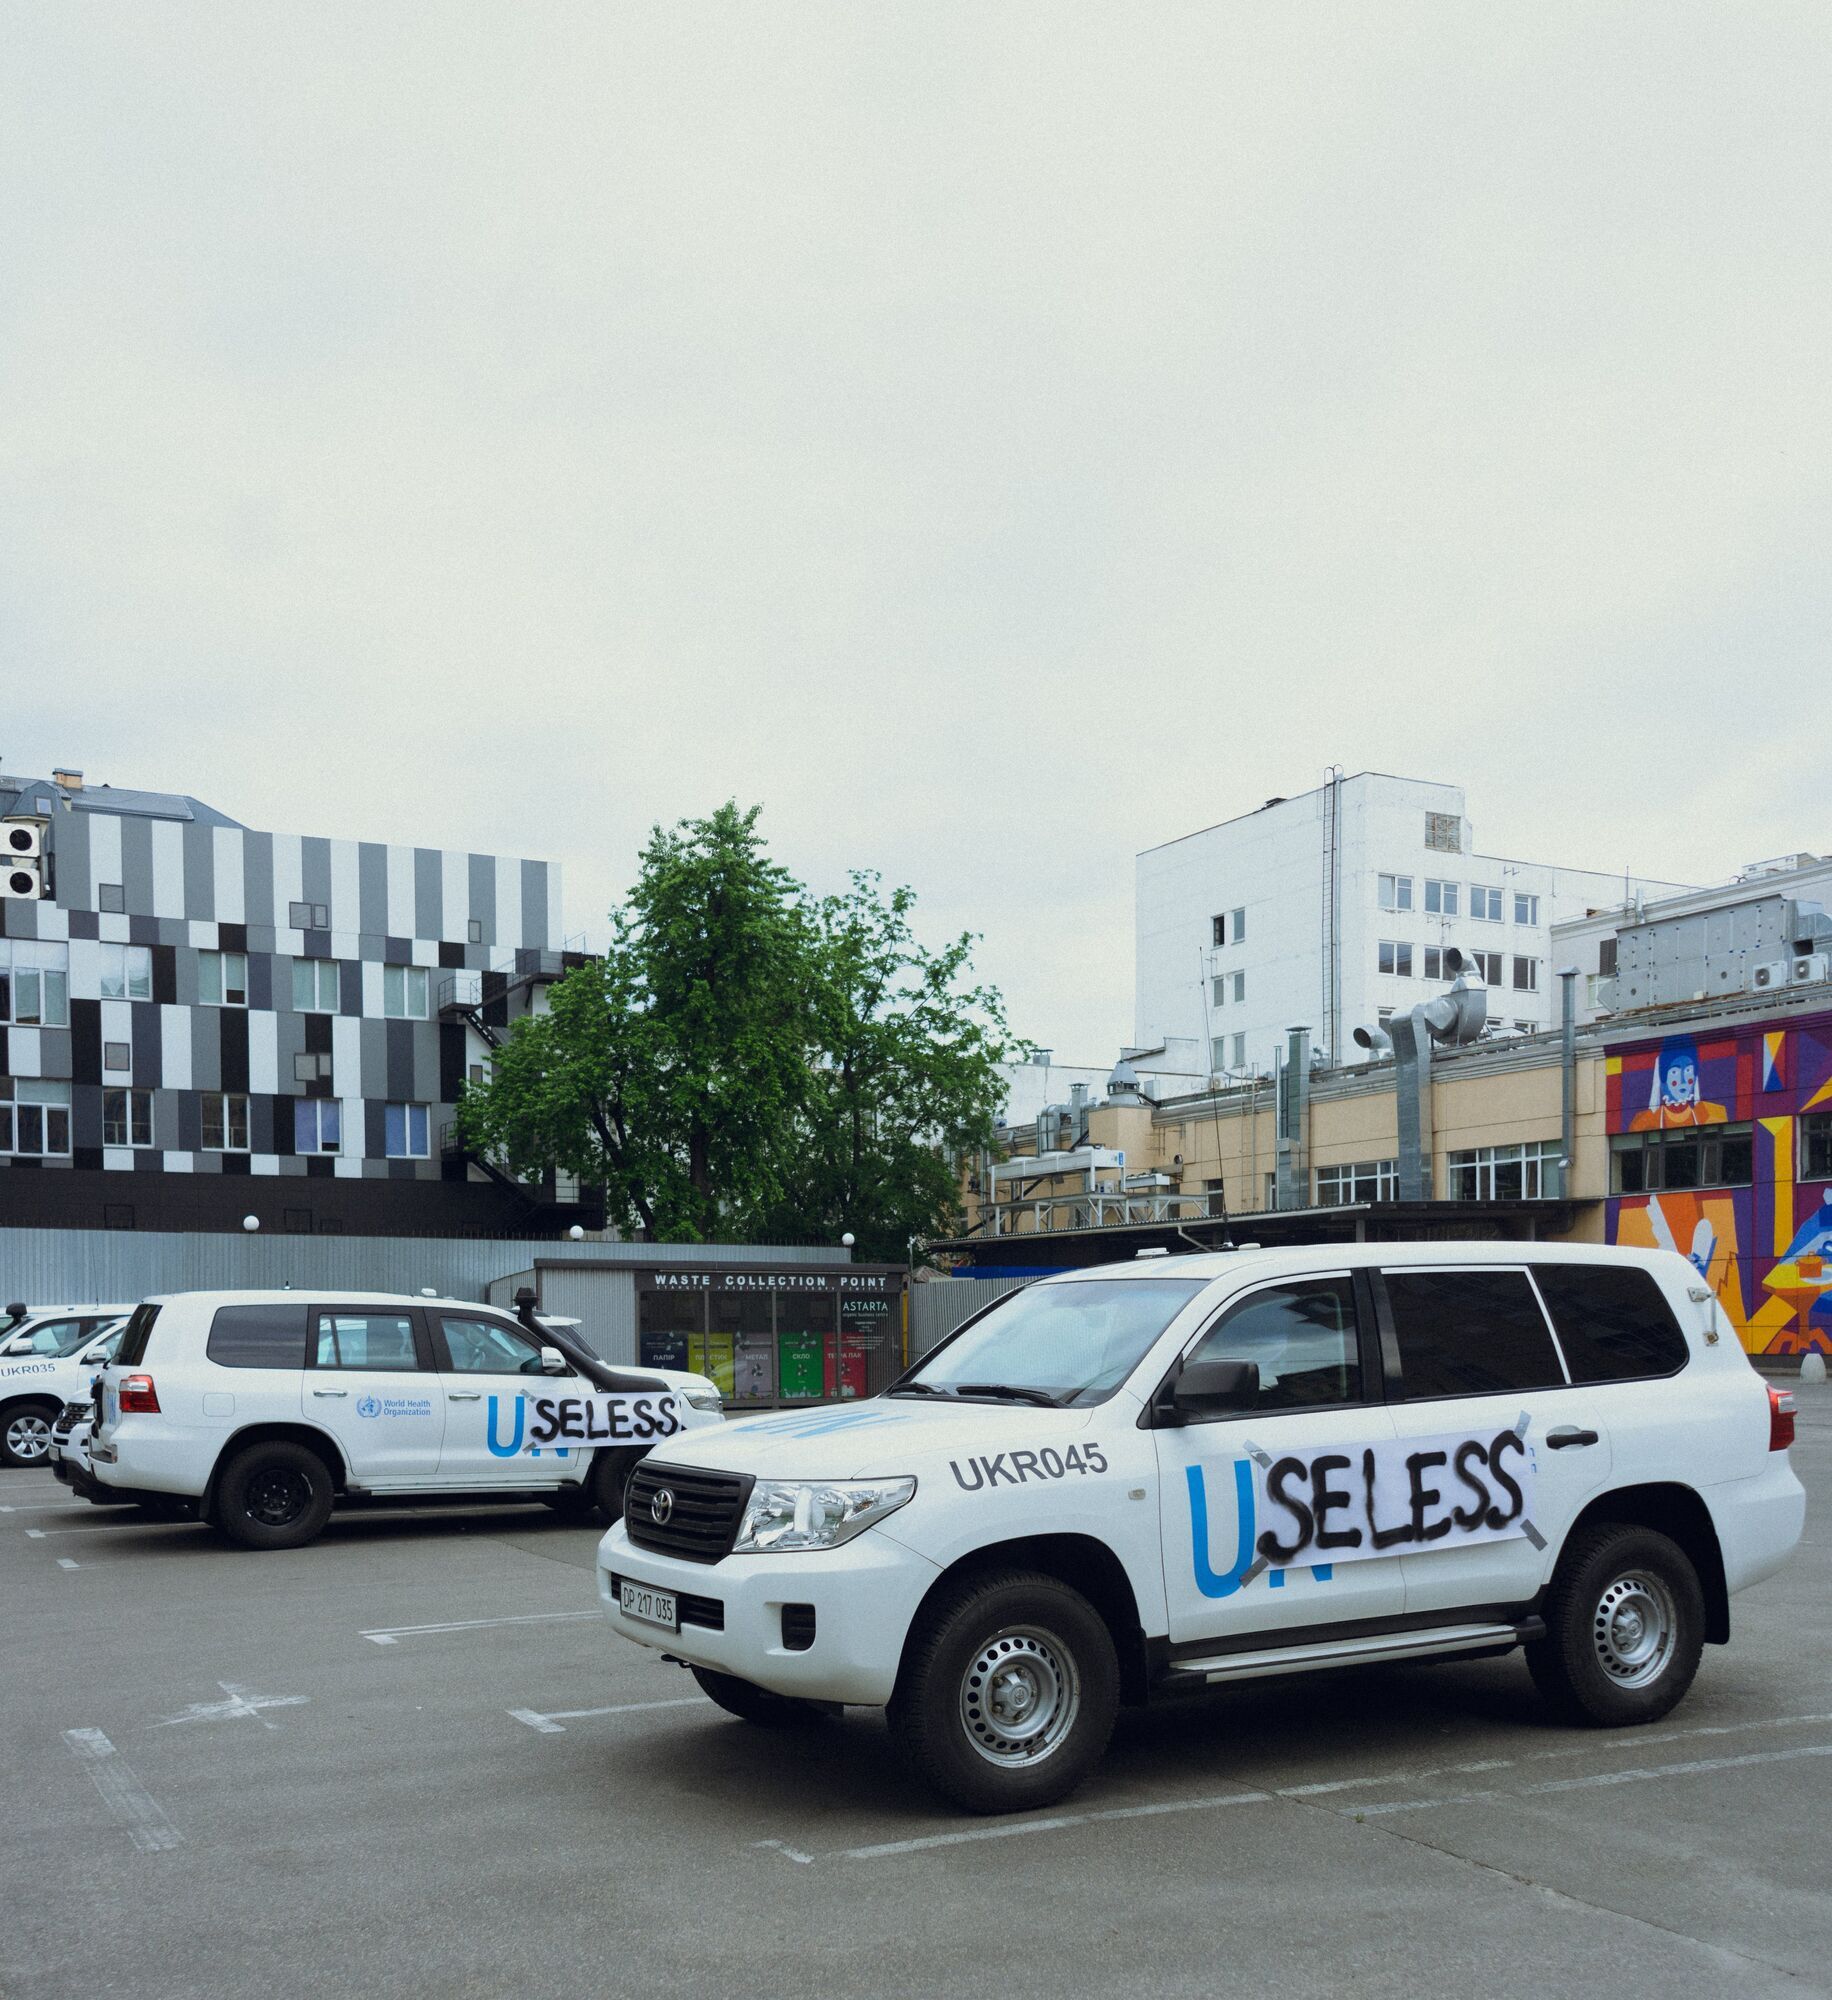 У Києві на авто ООН приклеїли напис "Некорисні" через позицію організації щодо підриву окупантами Каховської ГЕС. Фото